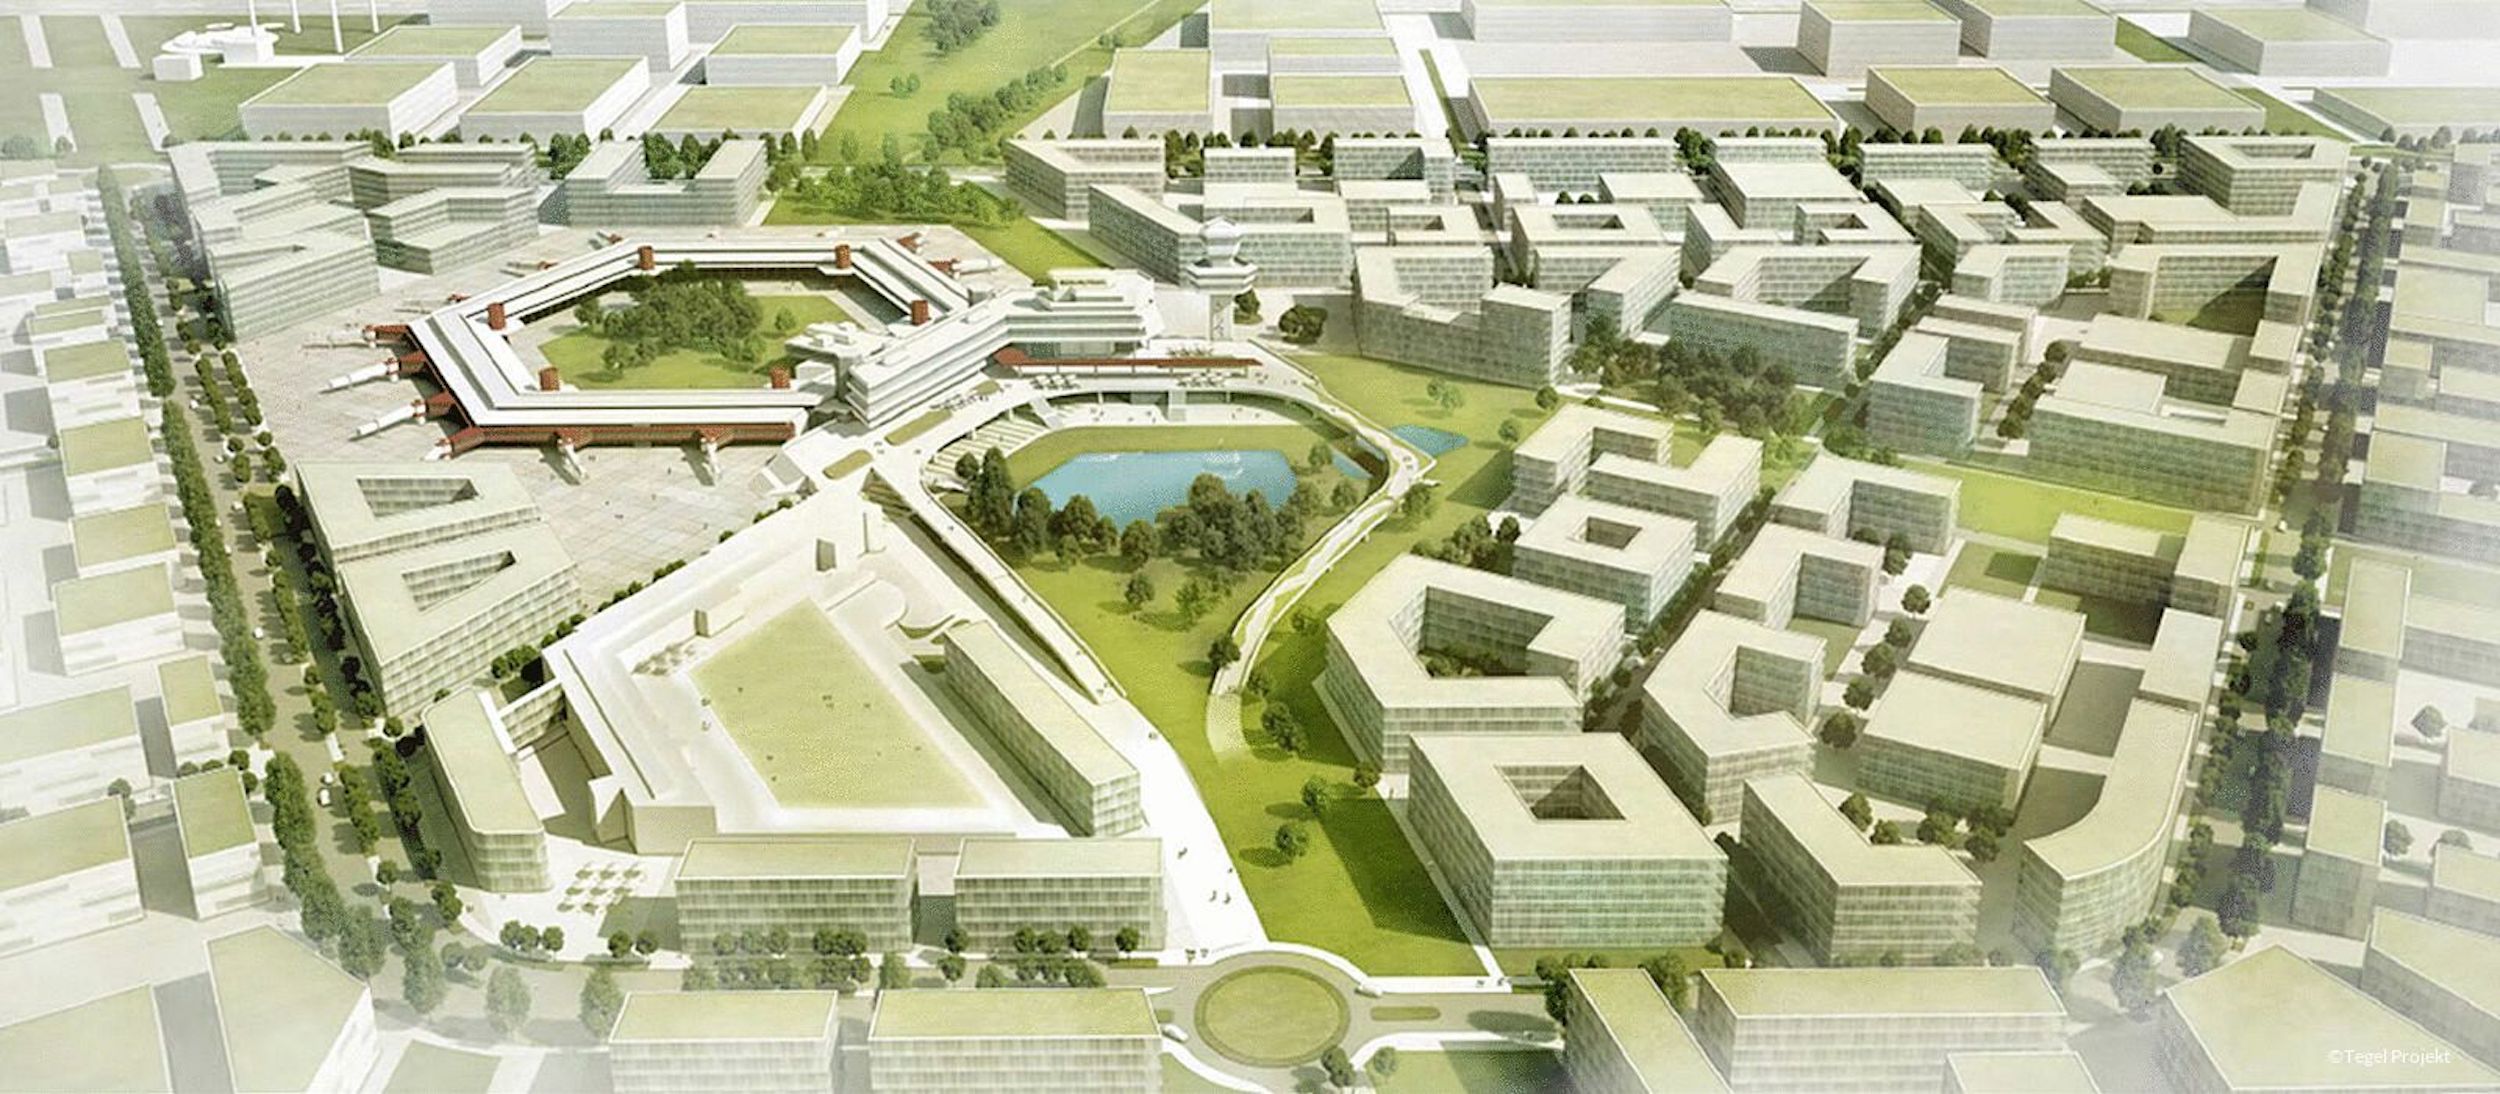 Berlin autómentes lakó- és technológiai negyeddé alakítja át az egykori Tegel repülőteret